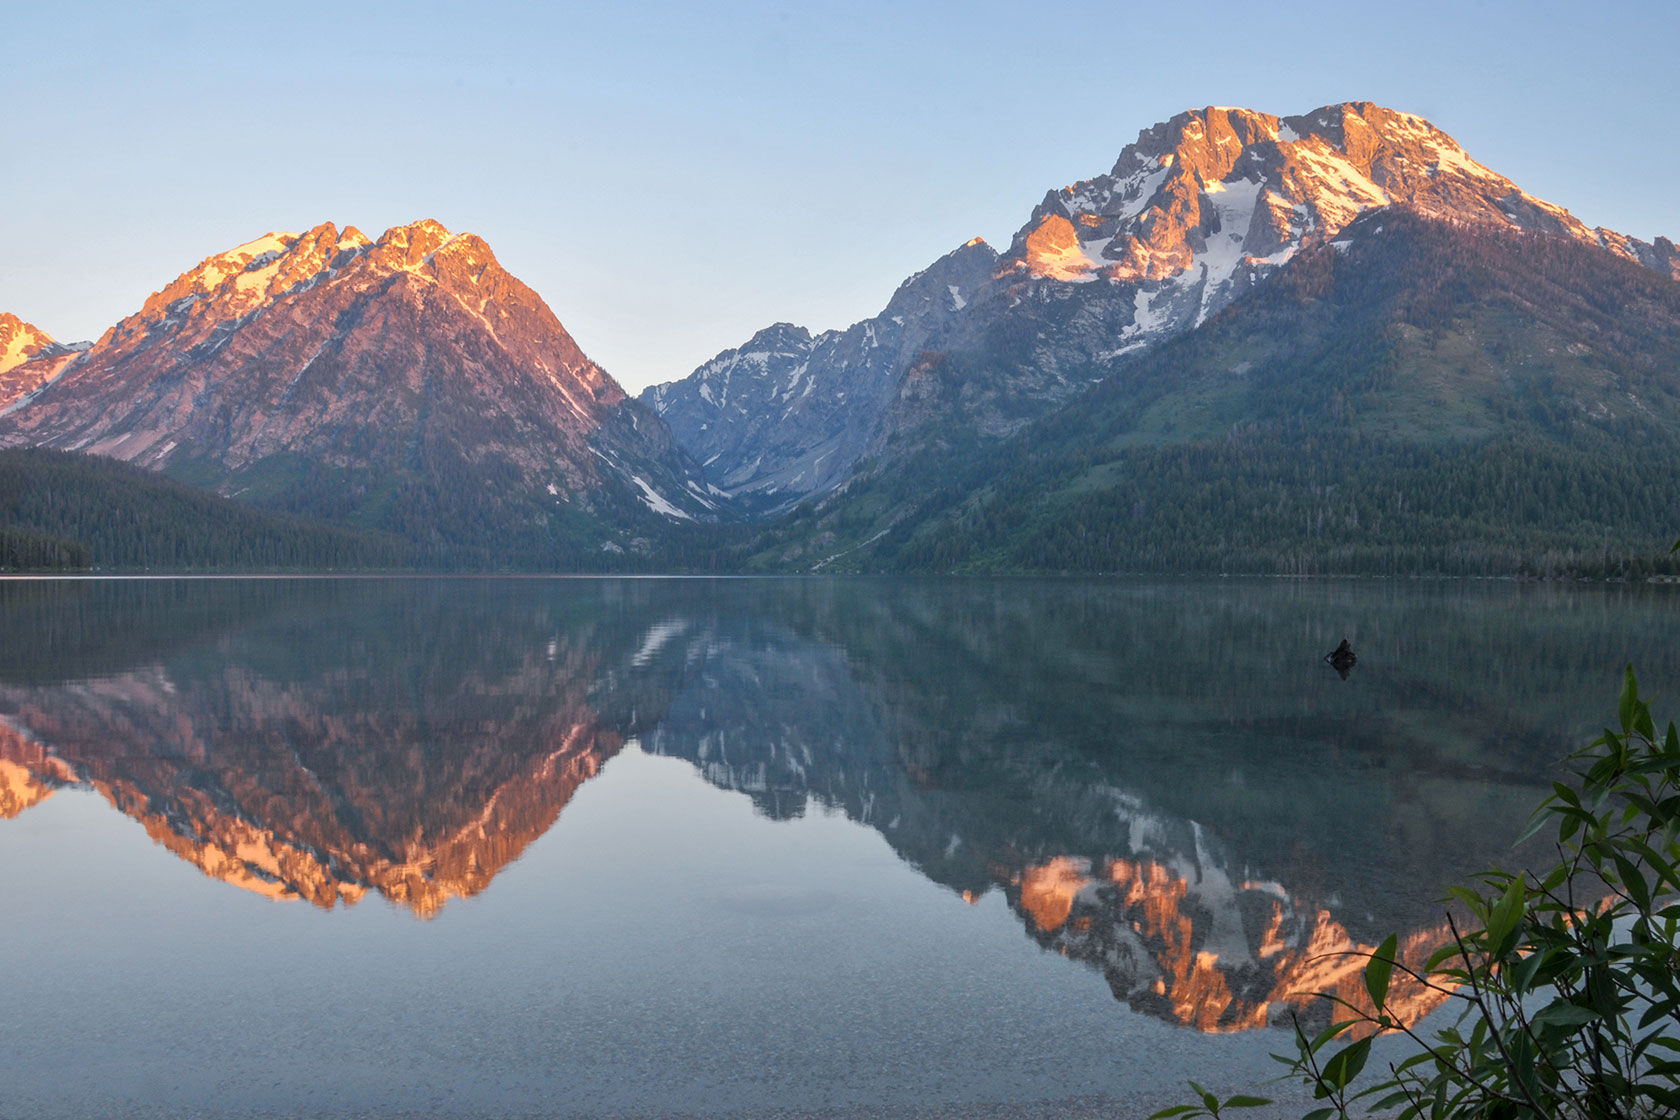 Leigh Lake Sunrise Reflection - Stephen Williams Photography, Jackson Wyoming